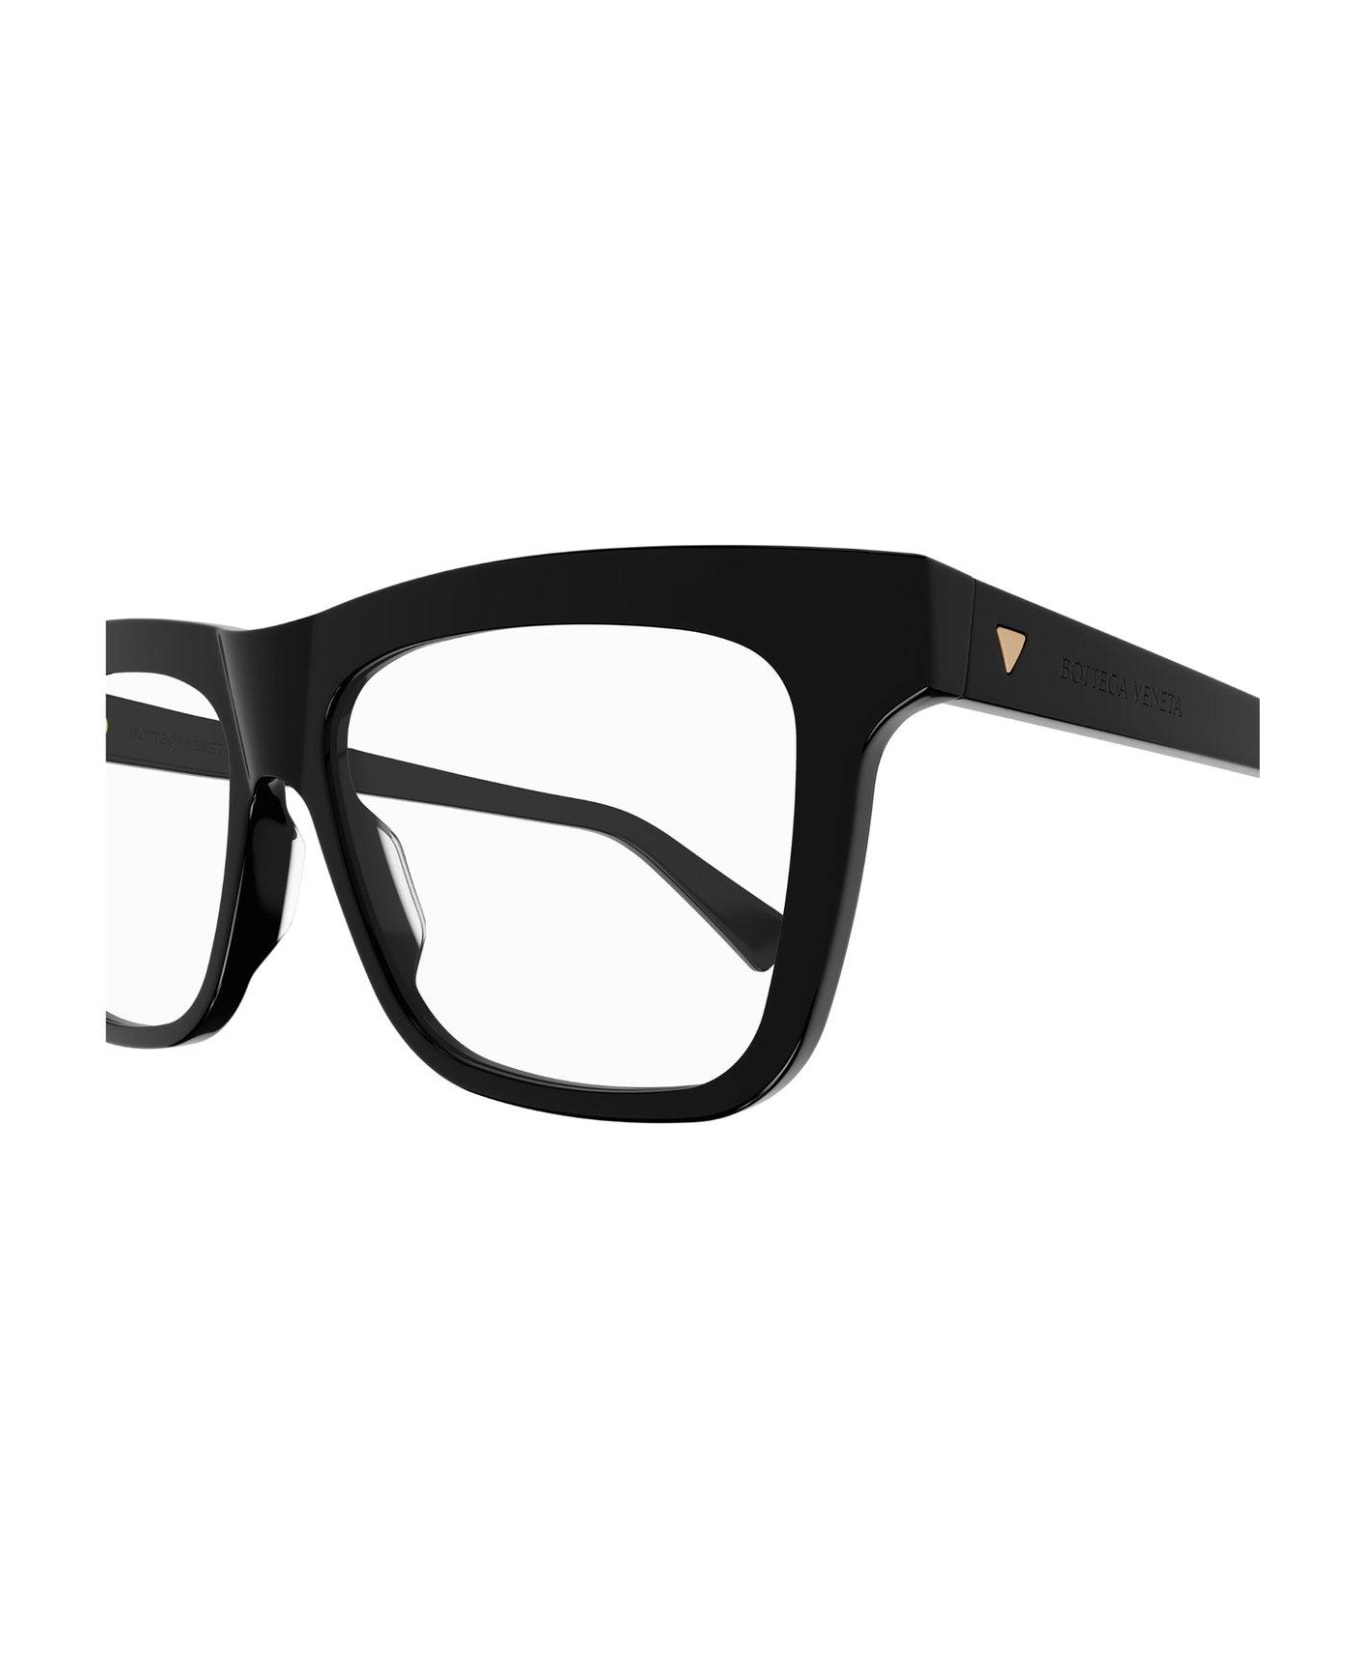 Bottega Veneta Eyewear Square-frame Glasses - 006 black black transpare